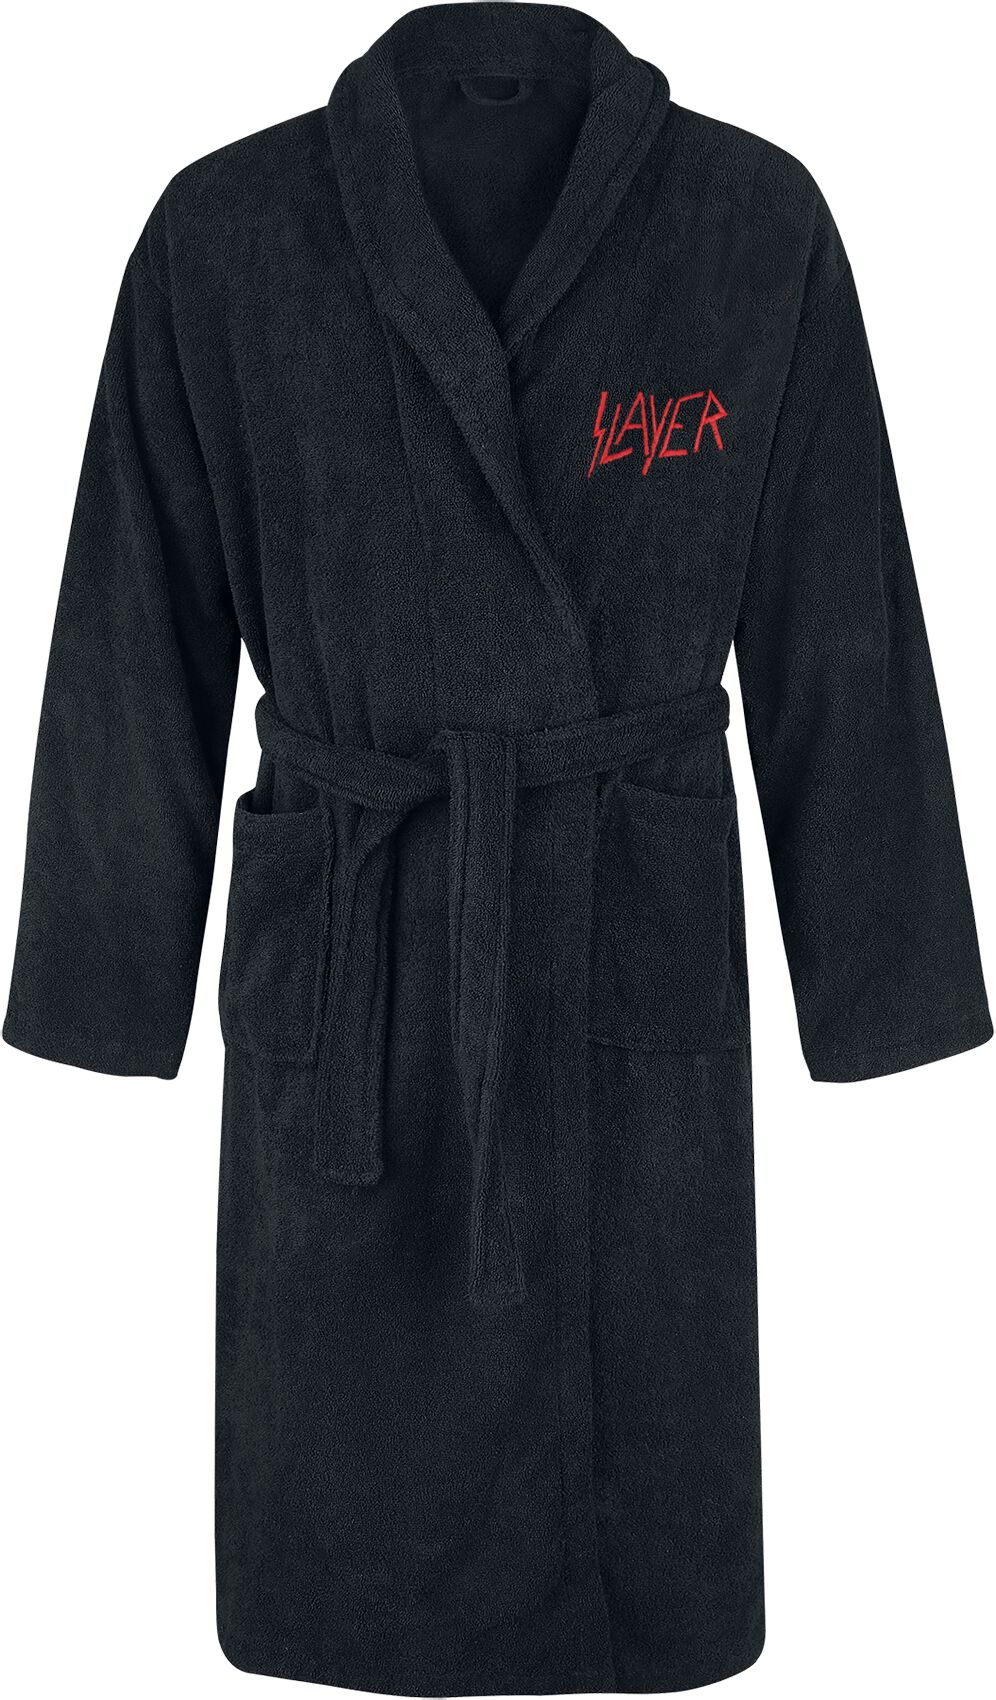 Slayer Bademantel - Logo - S-M bis XXL-3XL - Größe S-M - schwarz  - EMP exklusives Merchandise!